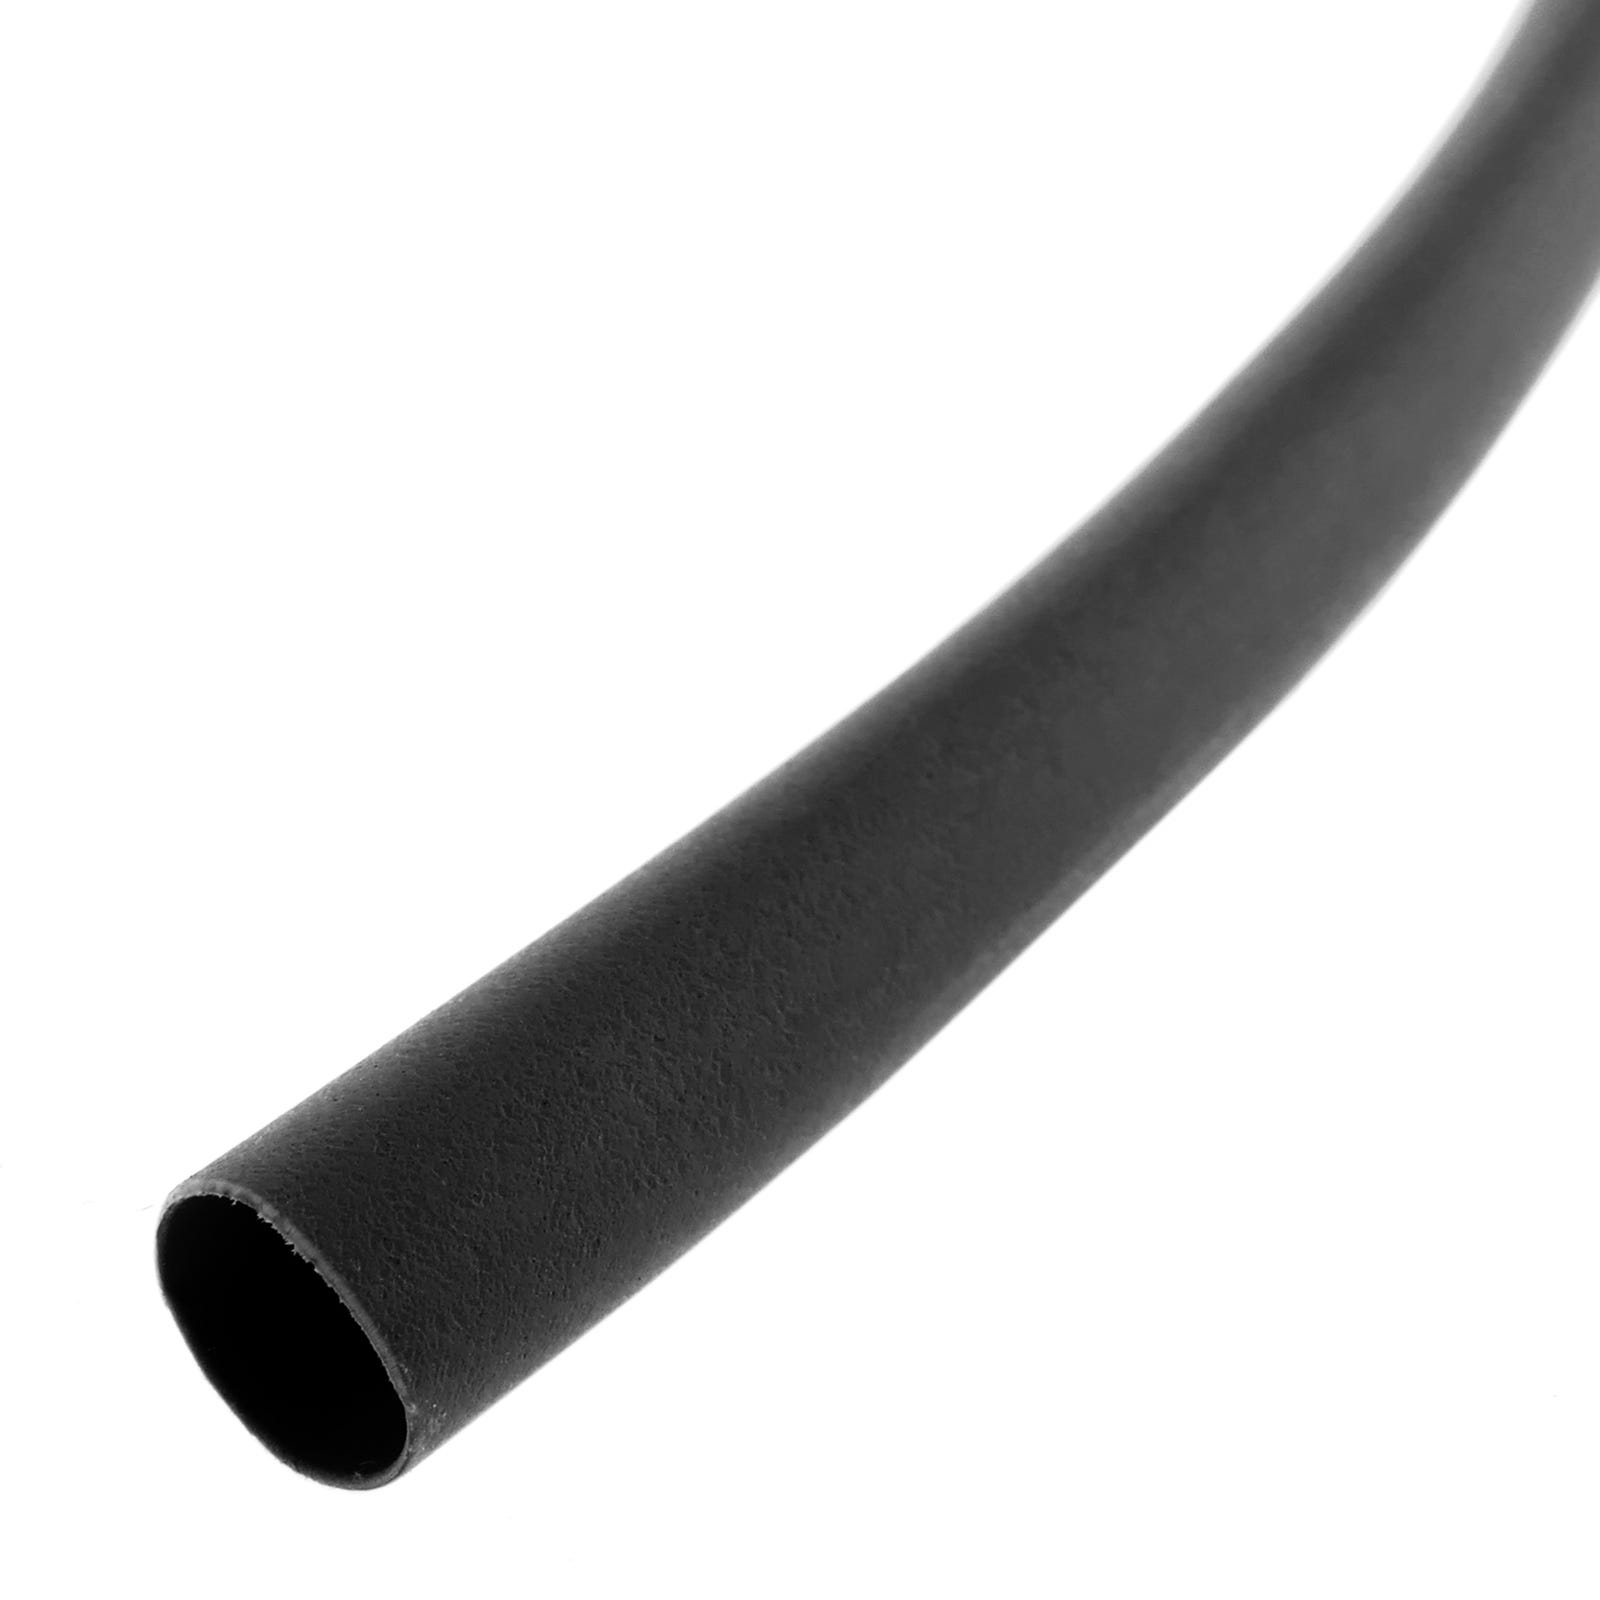 Tubo termoretractil para cables al mejor precio - Página 3